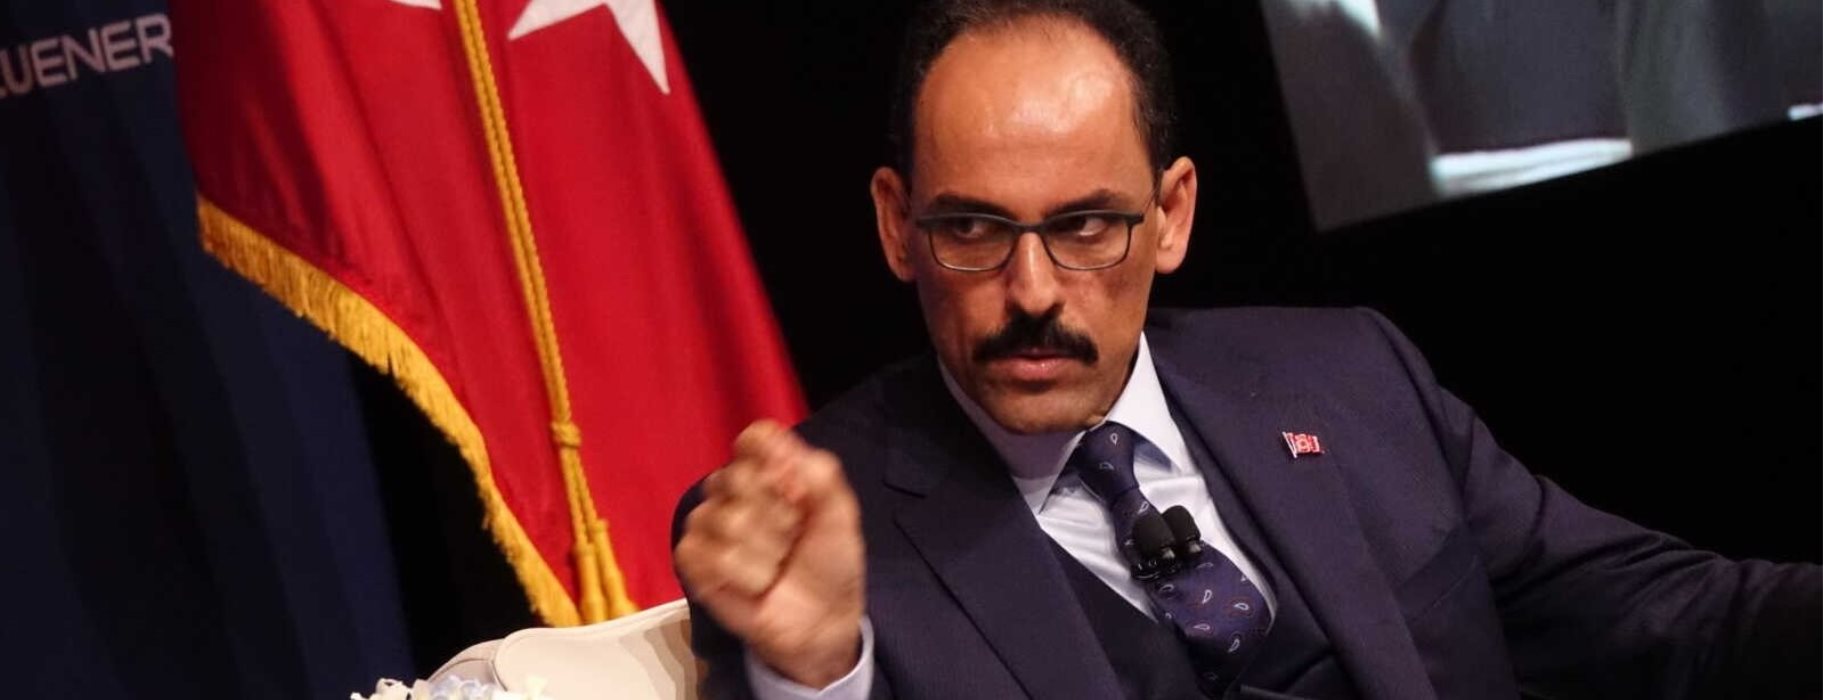 Ο Ι.Καλίν για την τουρκική πολιτική: «Όπως και στην Λιβύη και αλλού θα εφαρμόσουμε ότι επιβάλει η δύναμή μας»!